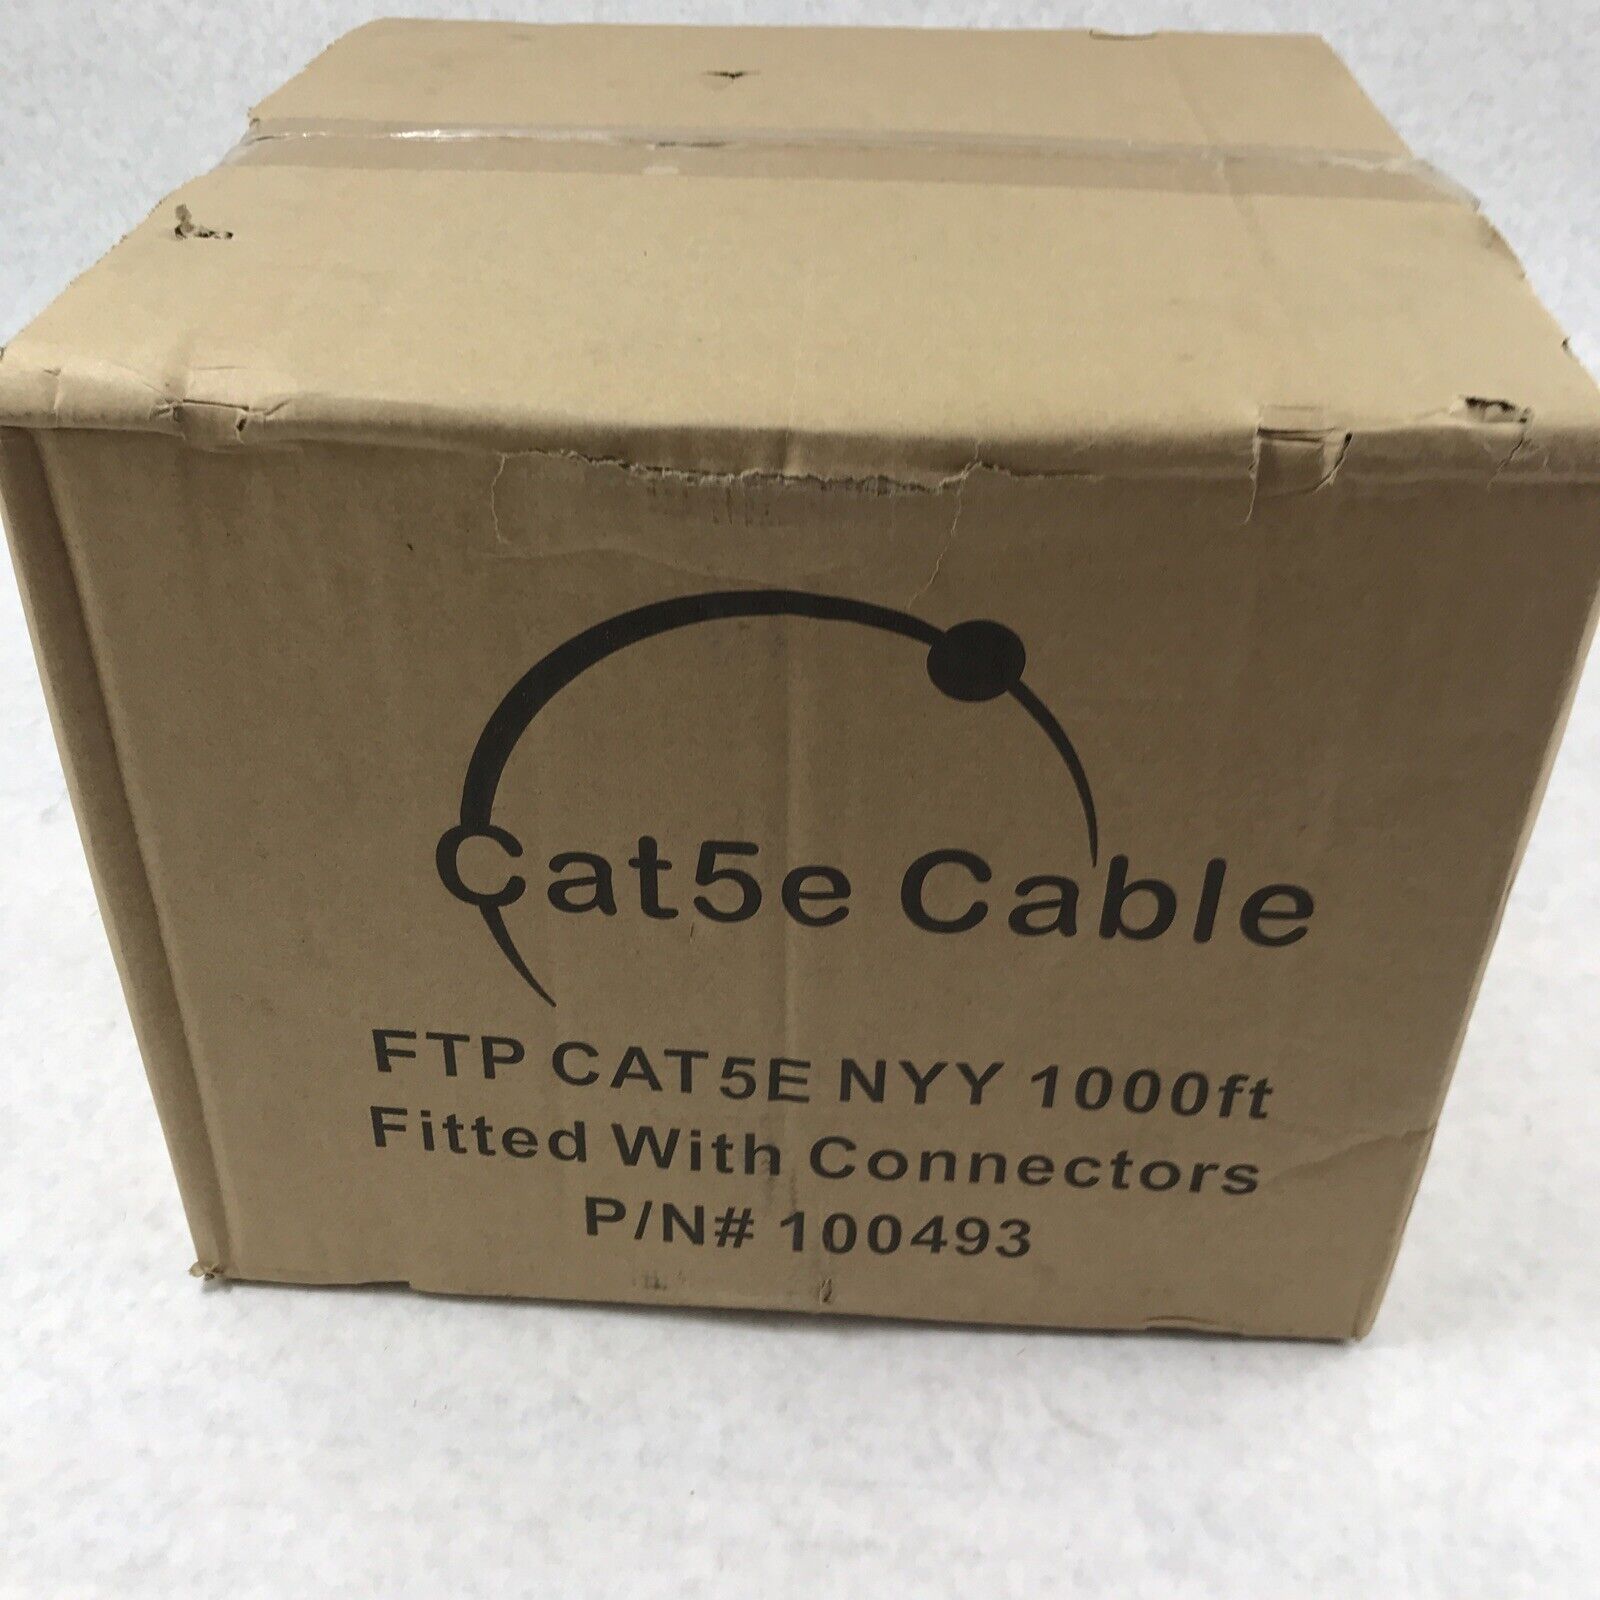 FTP Cat5e Lan Cable 1000ft Black P/N 100493